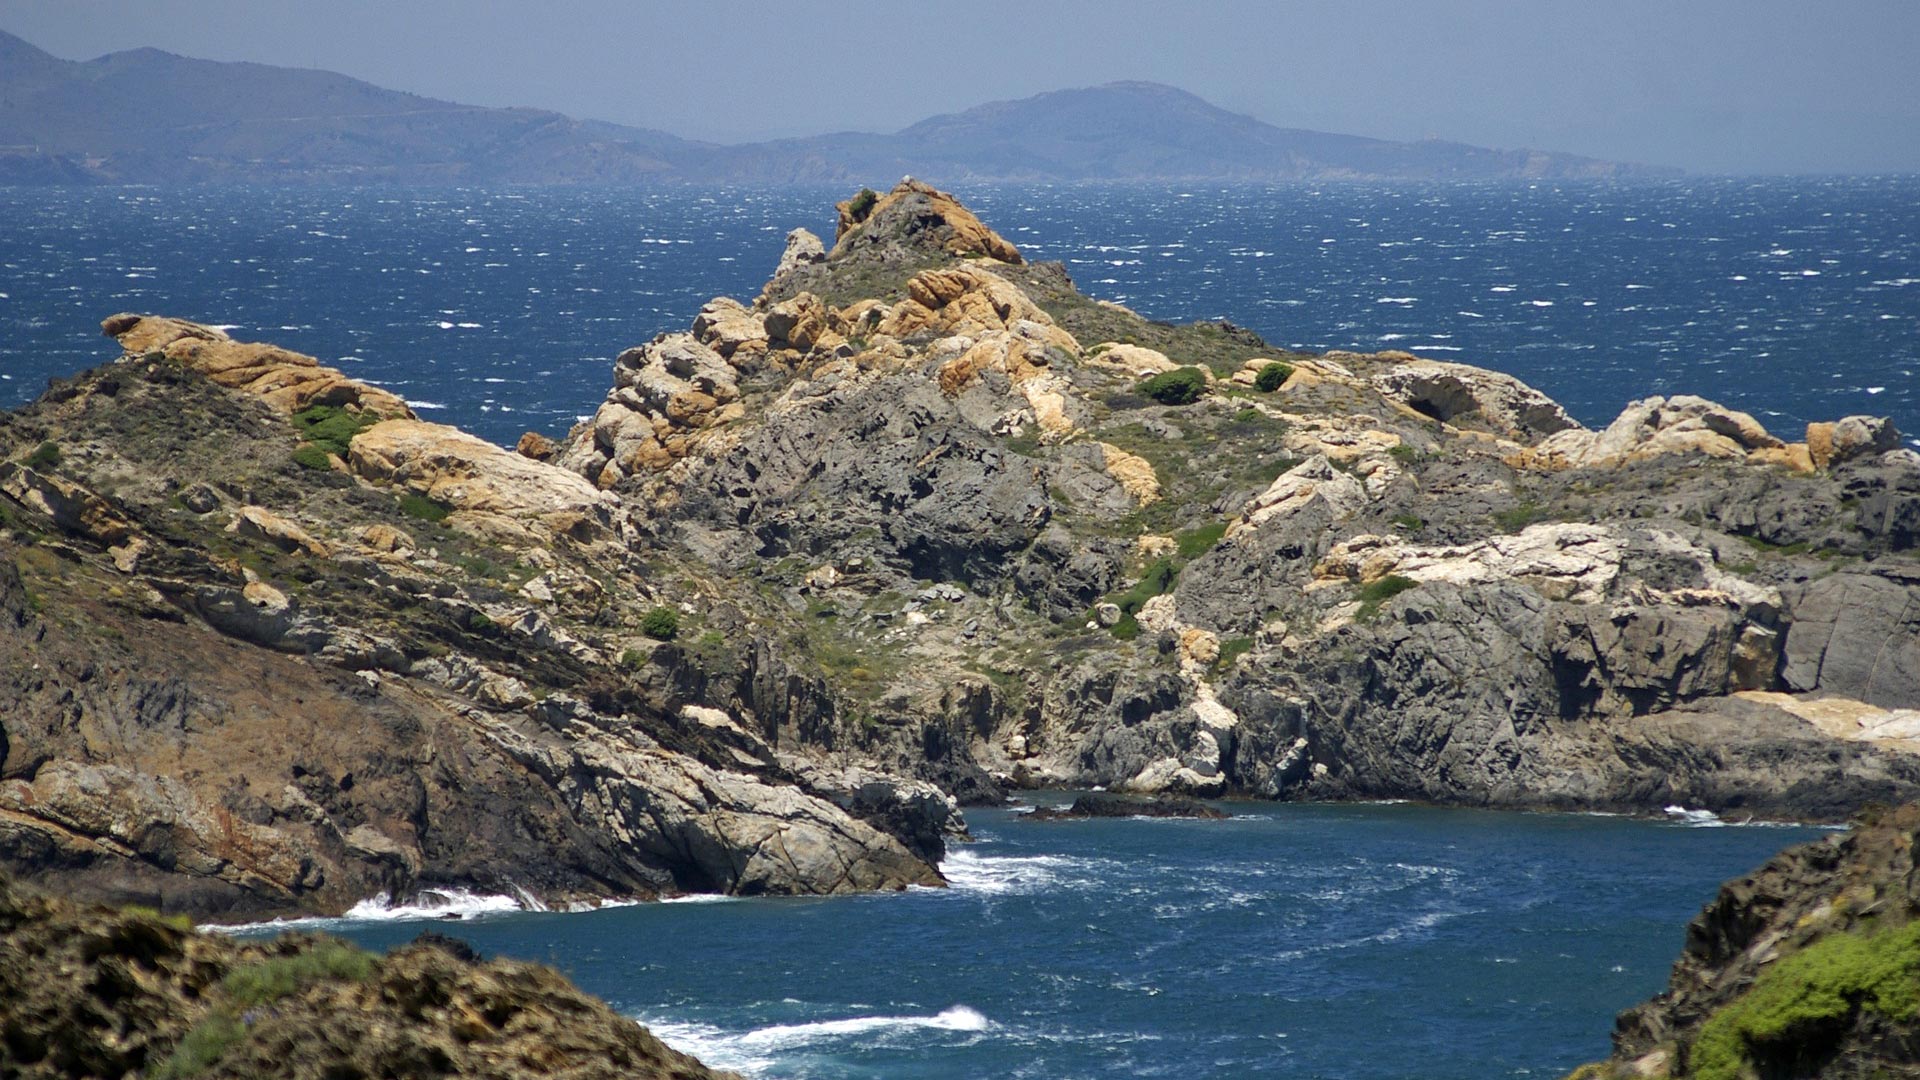 Análisis de la vulnerabilidad socioecológica a los impactos del cambio climático en el área marina de Cap de Creus y el Baix Empordà